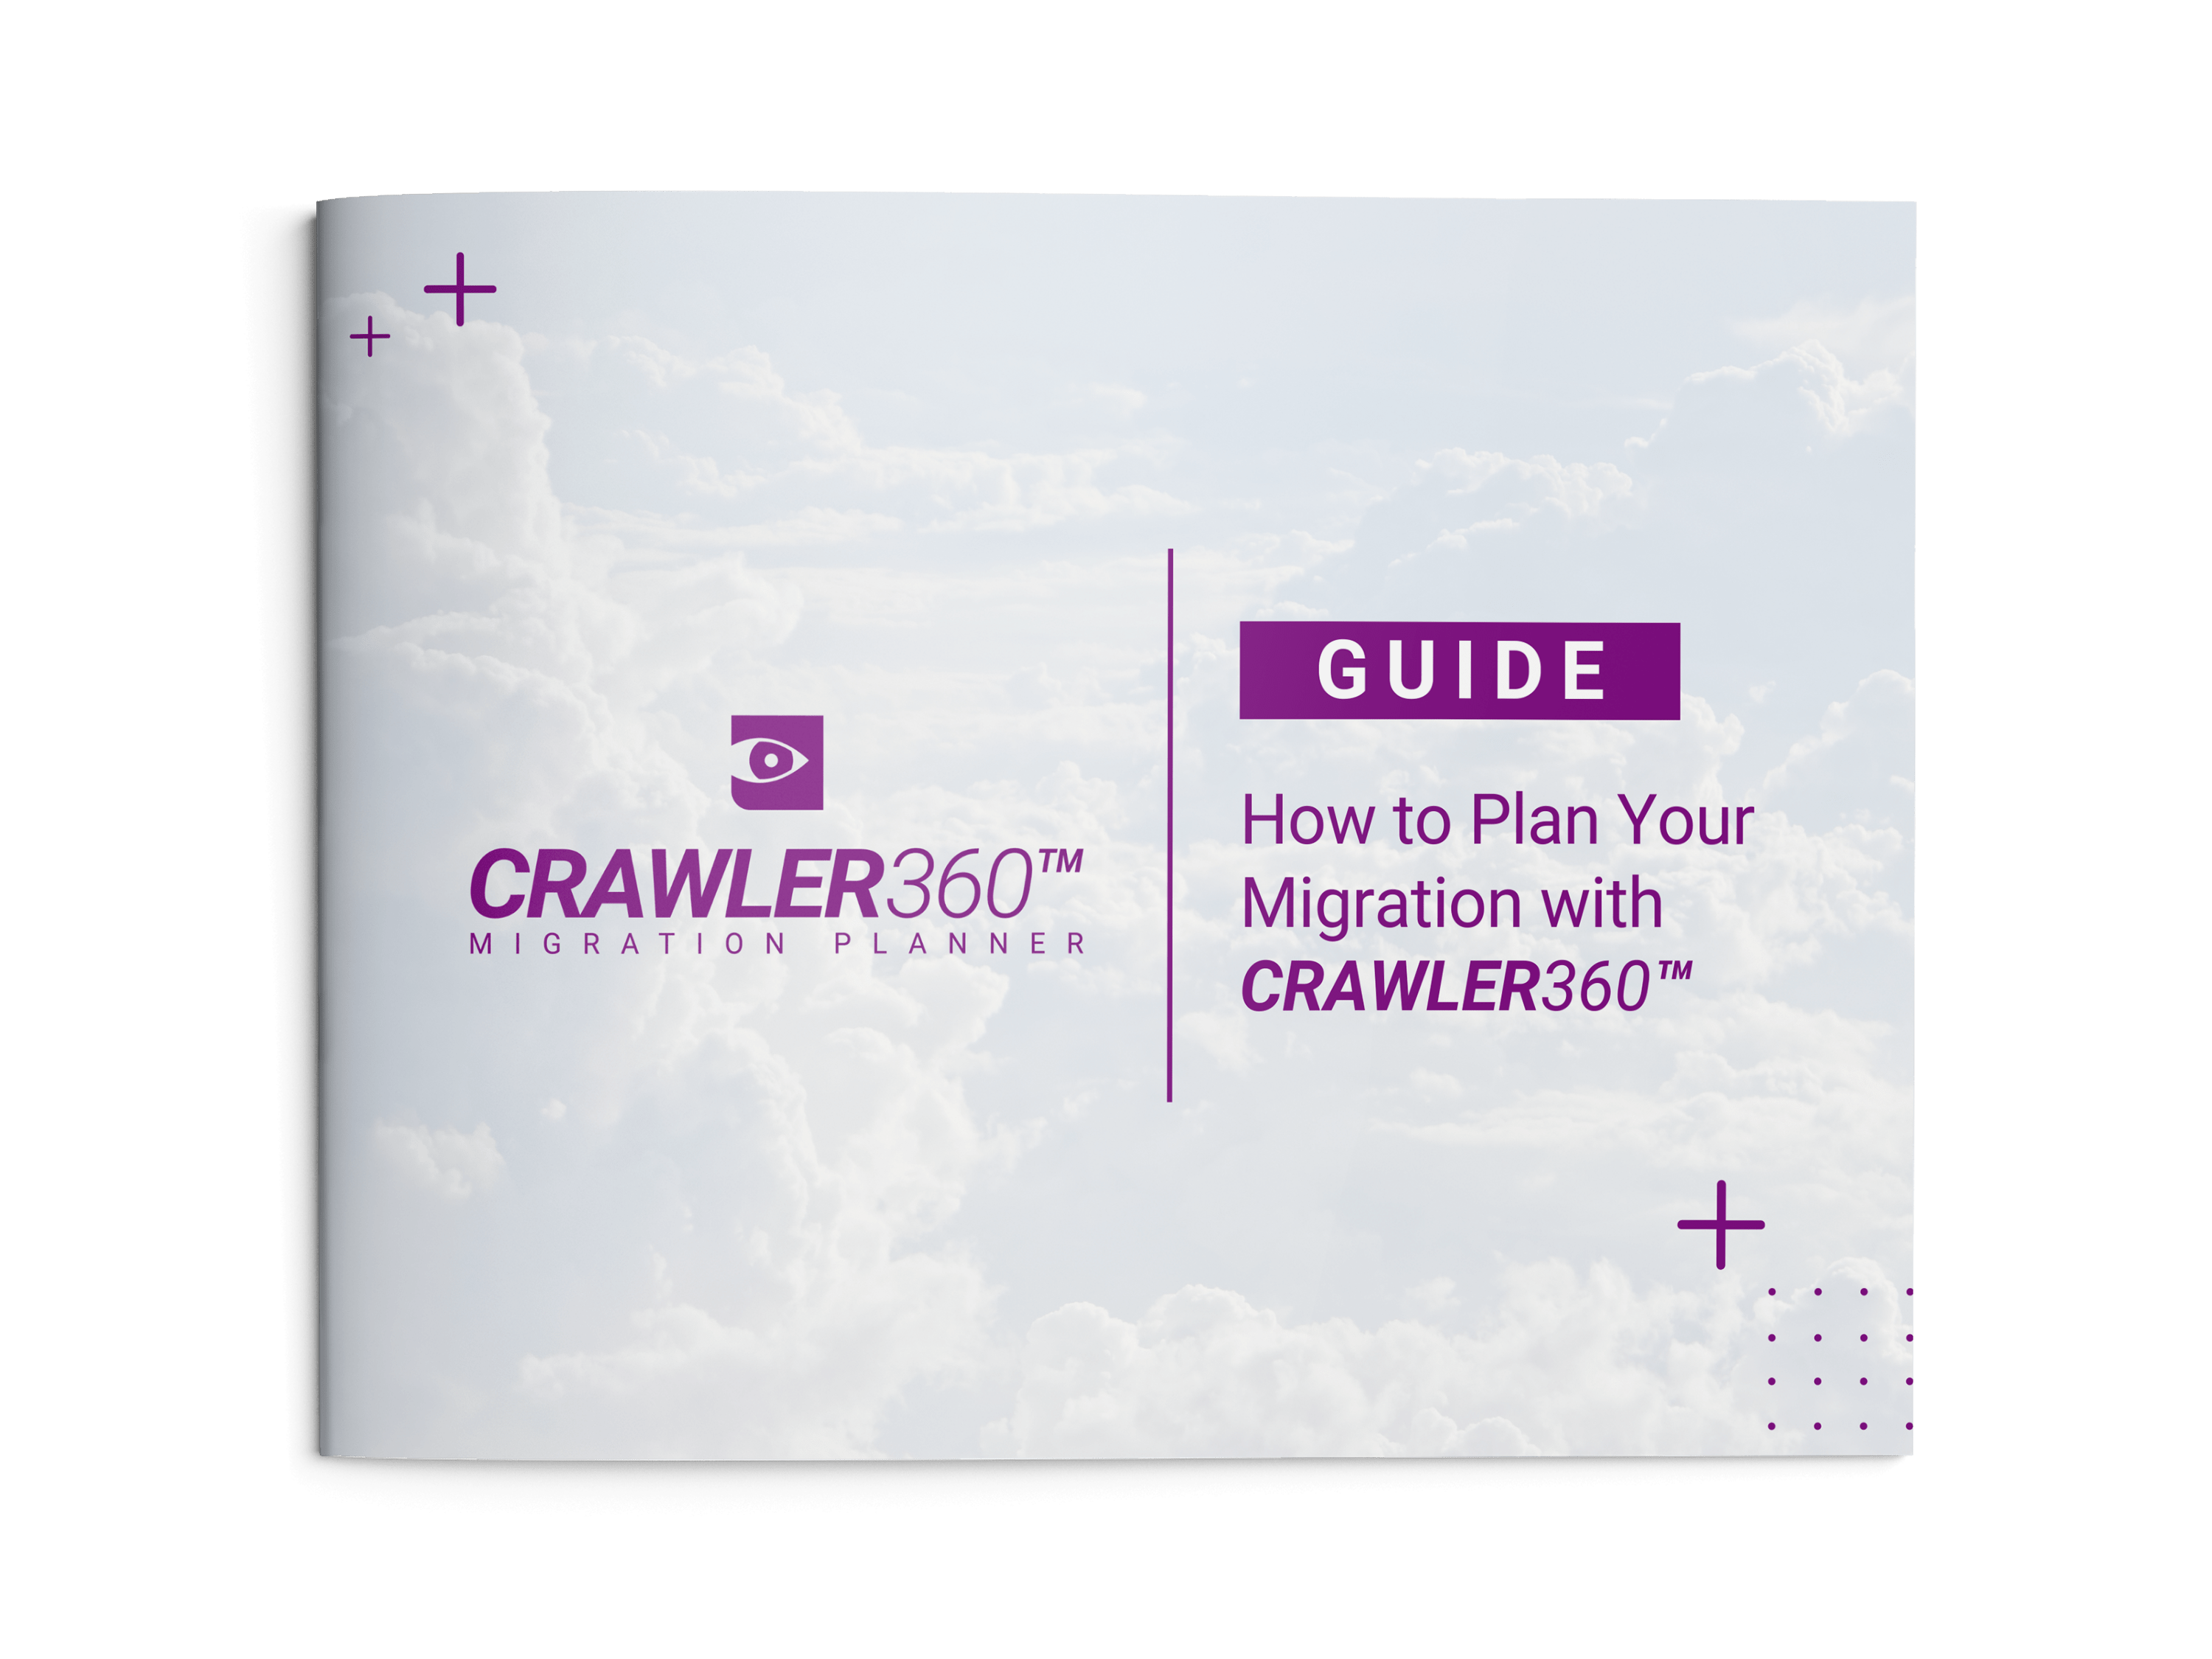 Crawler_Migration_Planner_Landscape_GUIDE_Mockup